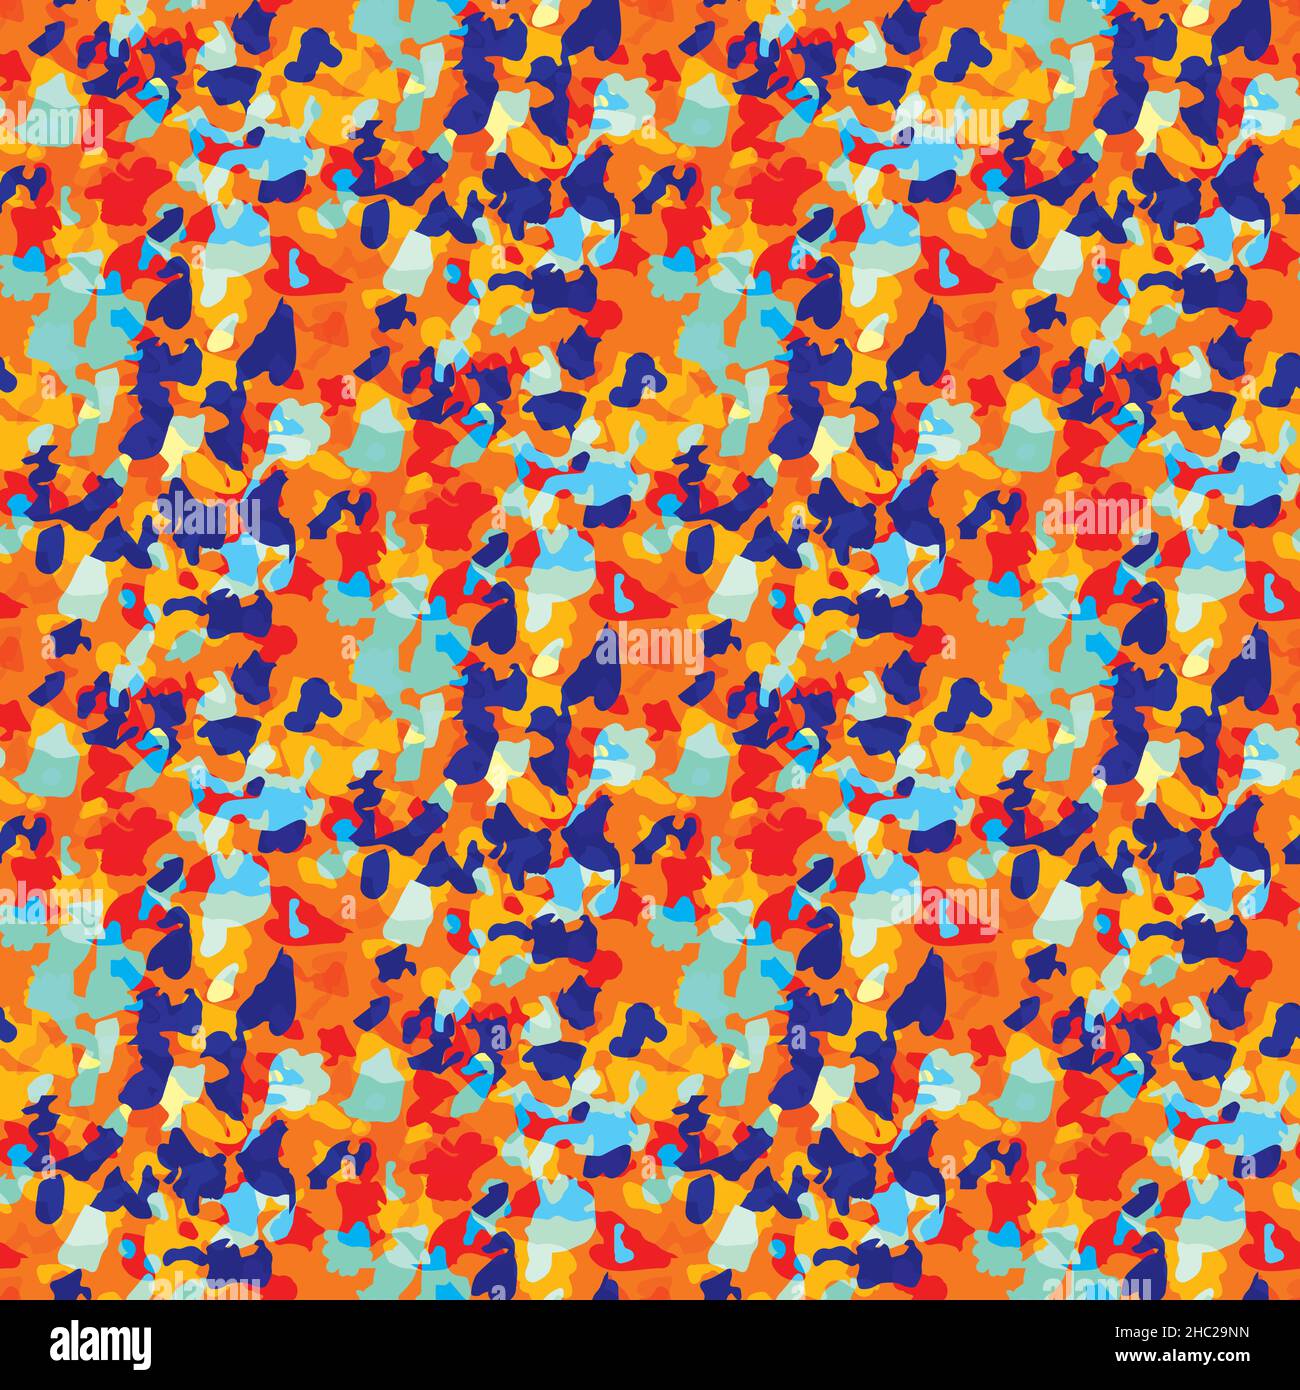 Pietra vettoriale schegge textured pattern sfondo. Sfondo dalle forme cristalline irregolari. Particelle di granito di grano blu arancio neon. Struttura rocciosa ignea di Illustrazione Vettoriale